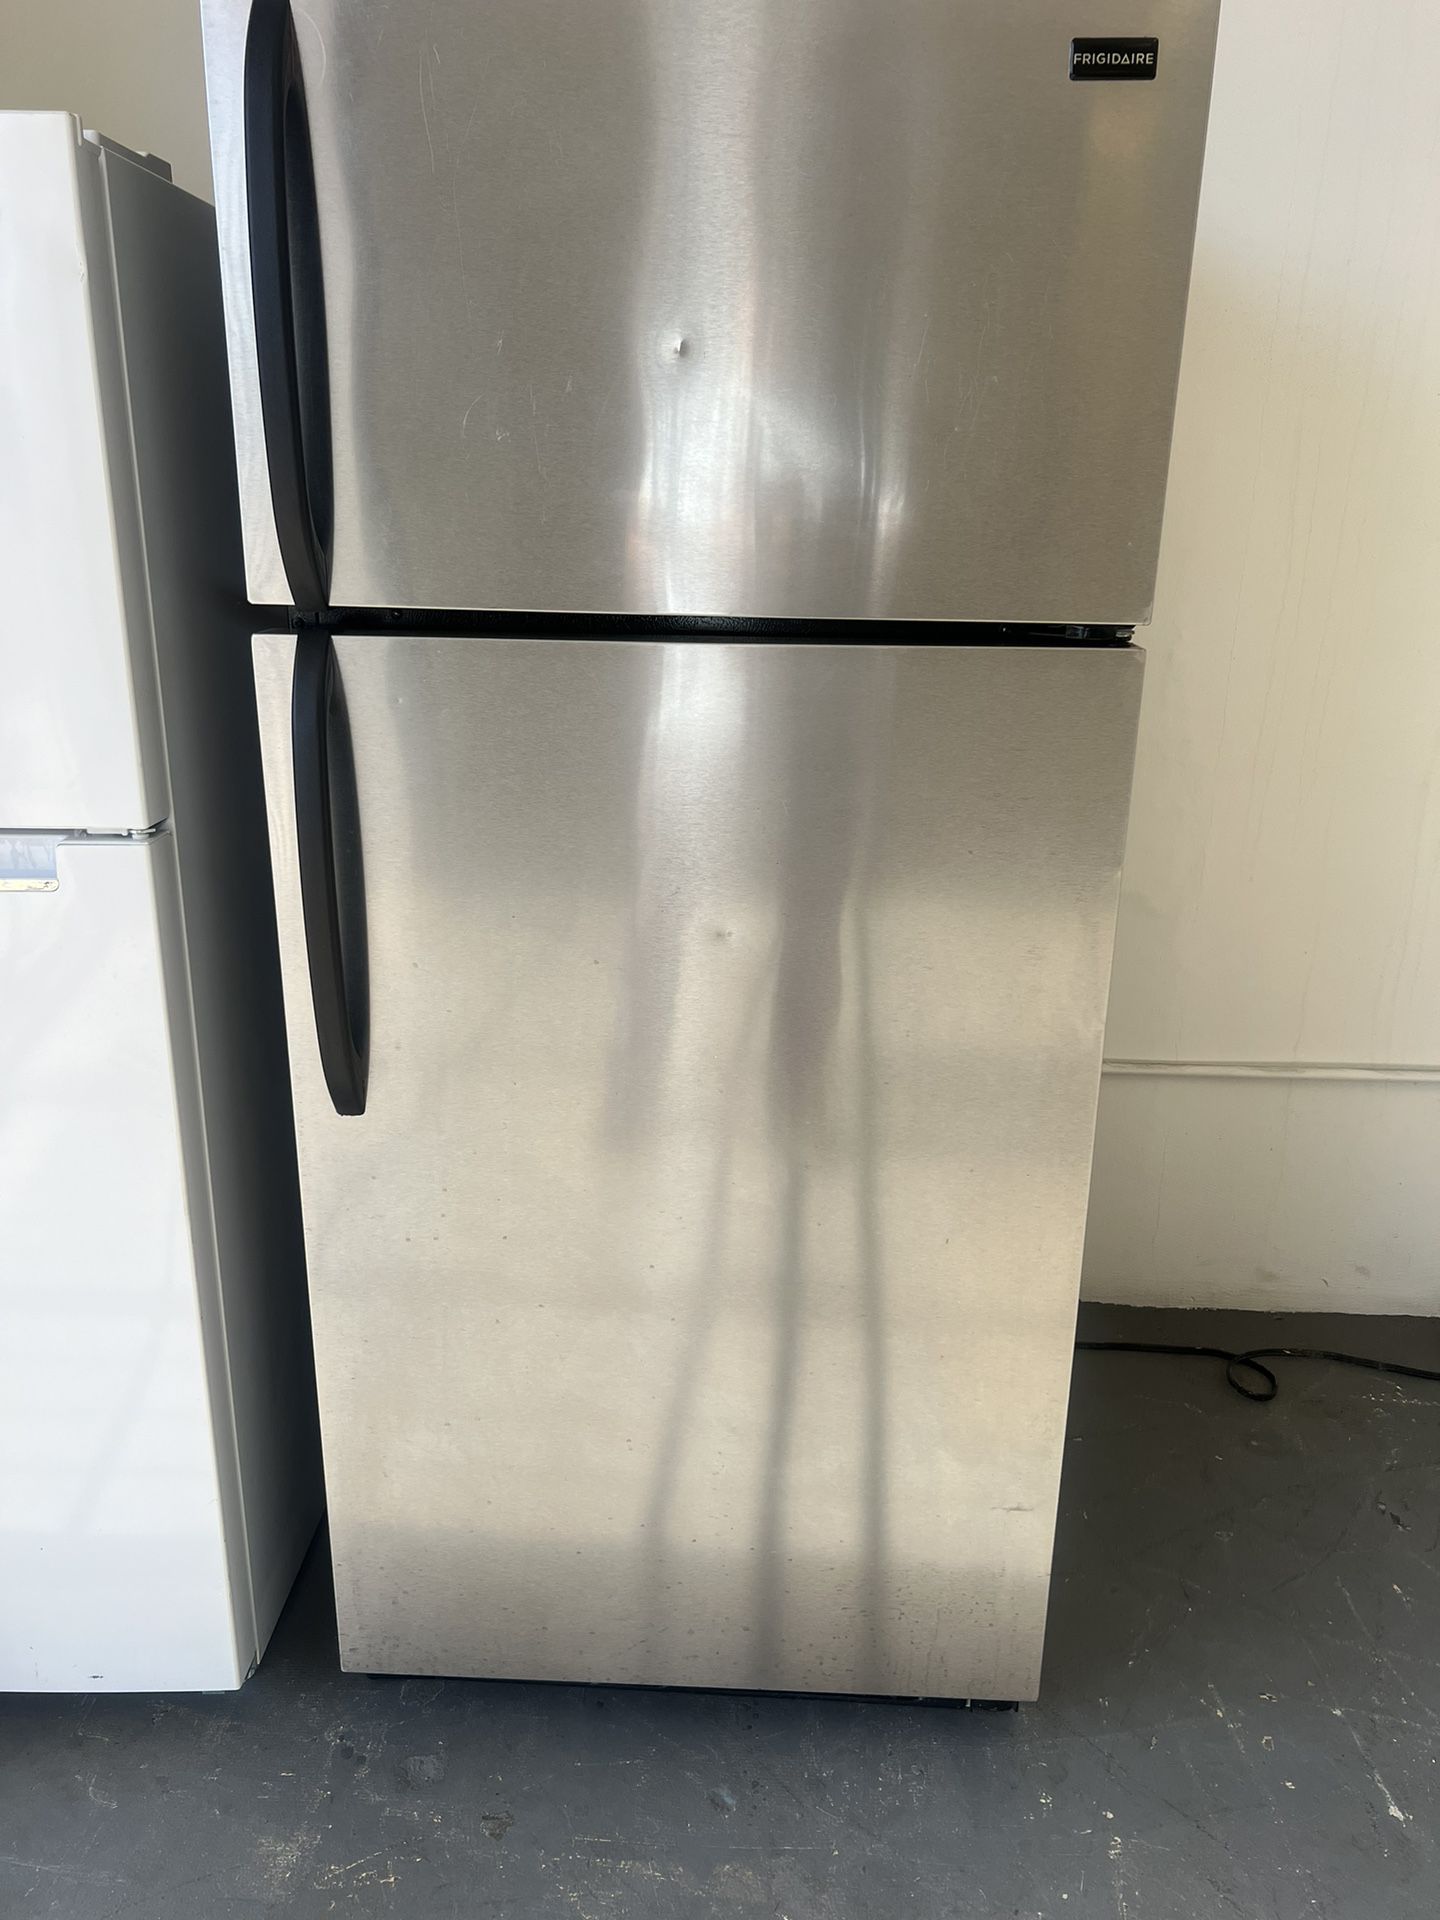 Refrigerator 28 “ Wides 